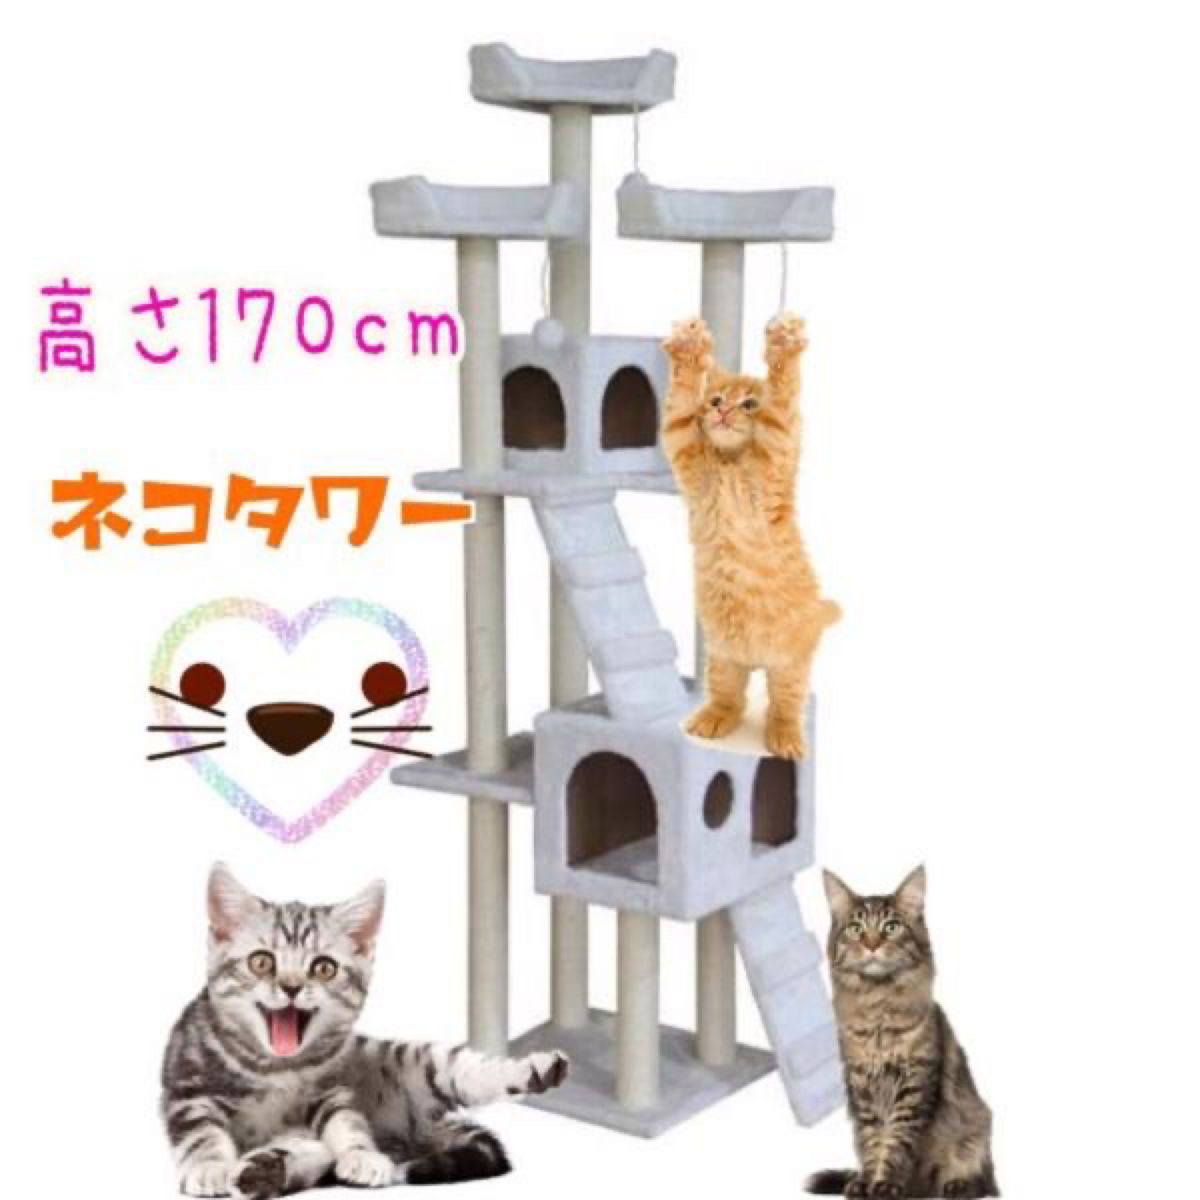 キャットタワー 猫タワーワイド170cm ファニチャー 置き型 ホワイト